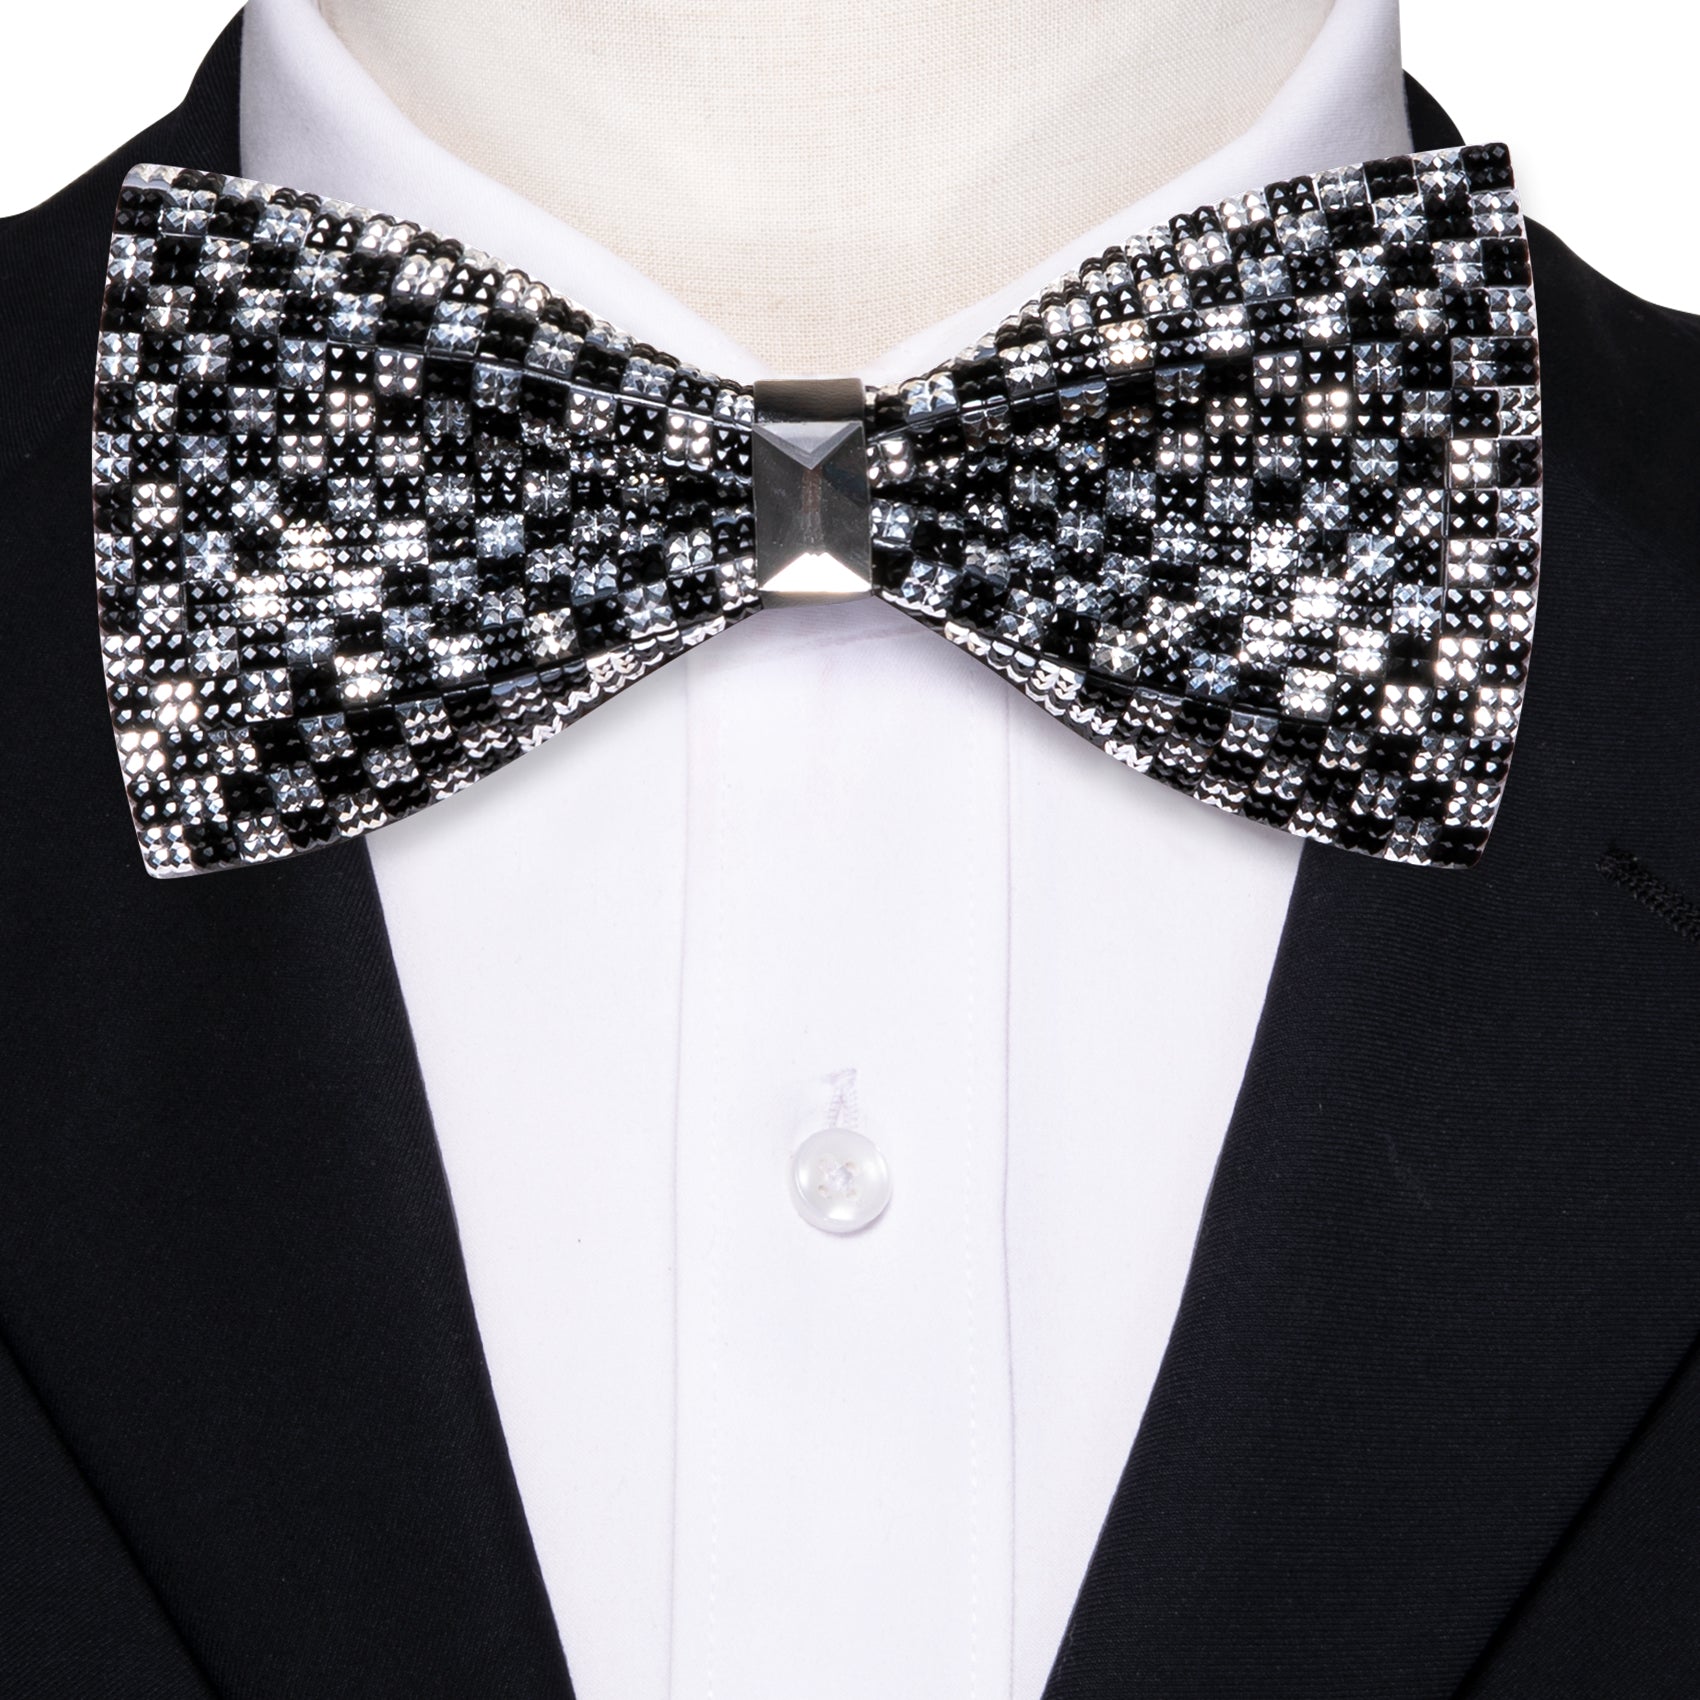 Shining Black White Plaid Rhinestones Pre-tied Bowties Fashion For Wedding Party